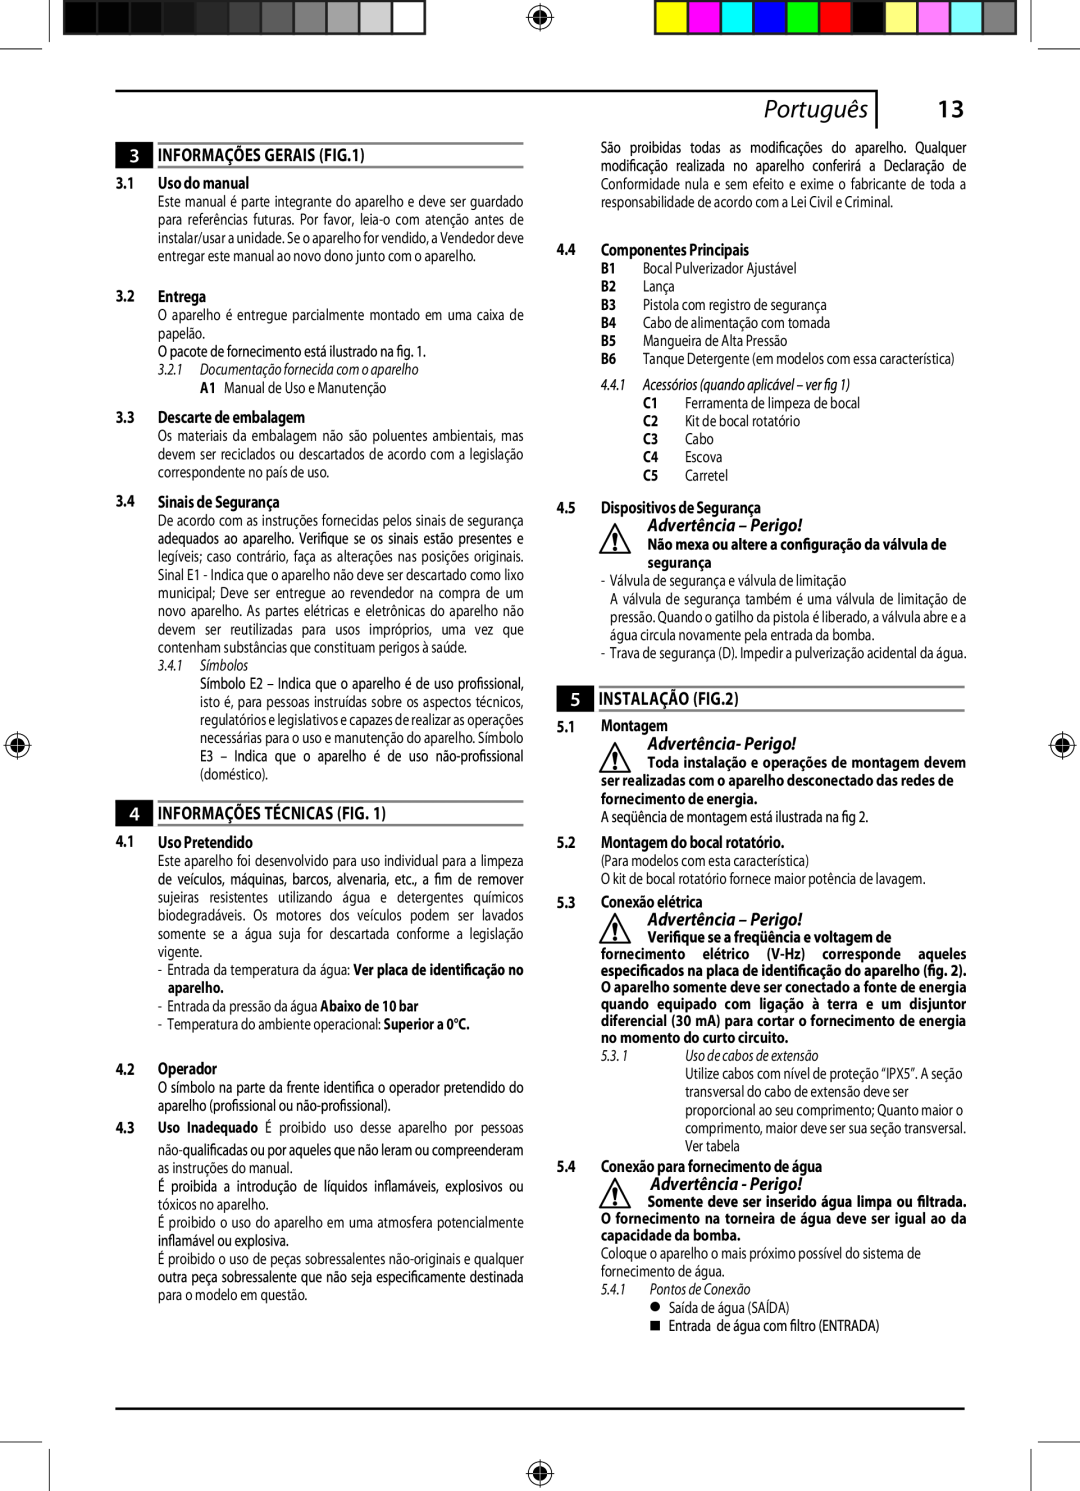 Black & Decker PW1550 Informações Gerais, Informações Técnicas Fig, Instalação, Advertência- Perigo, Português, segurança 